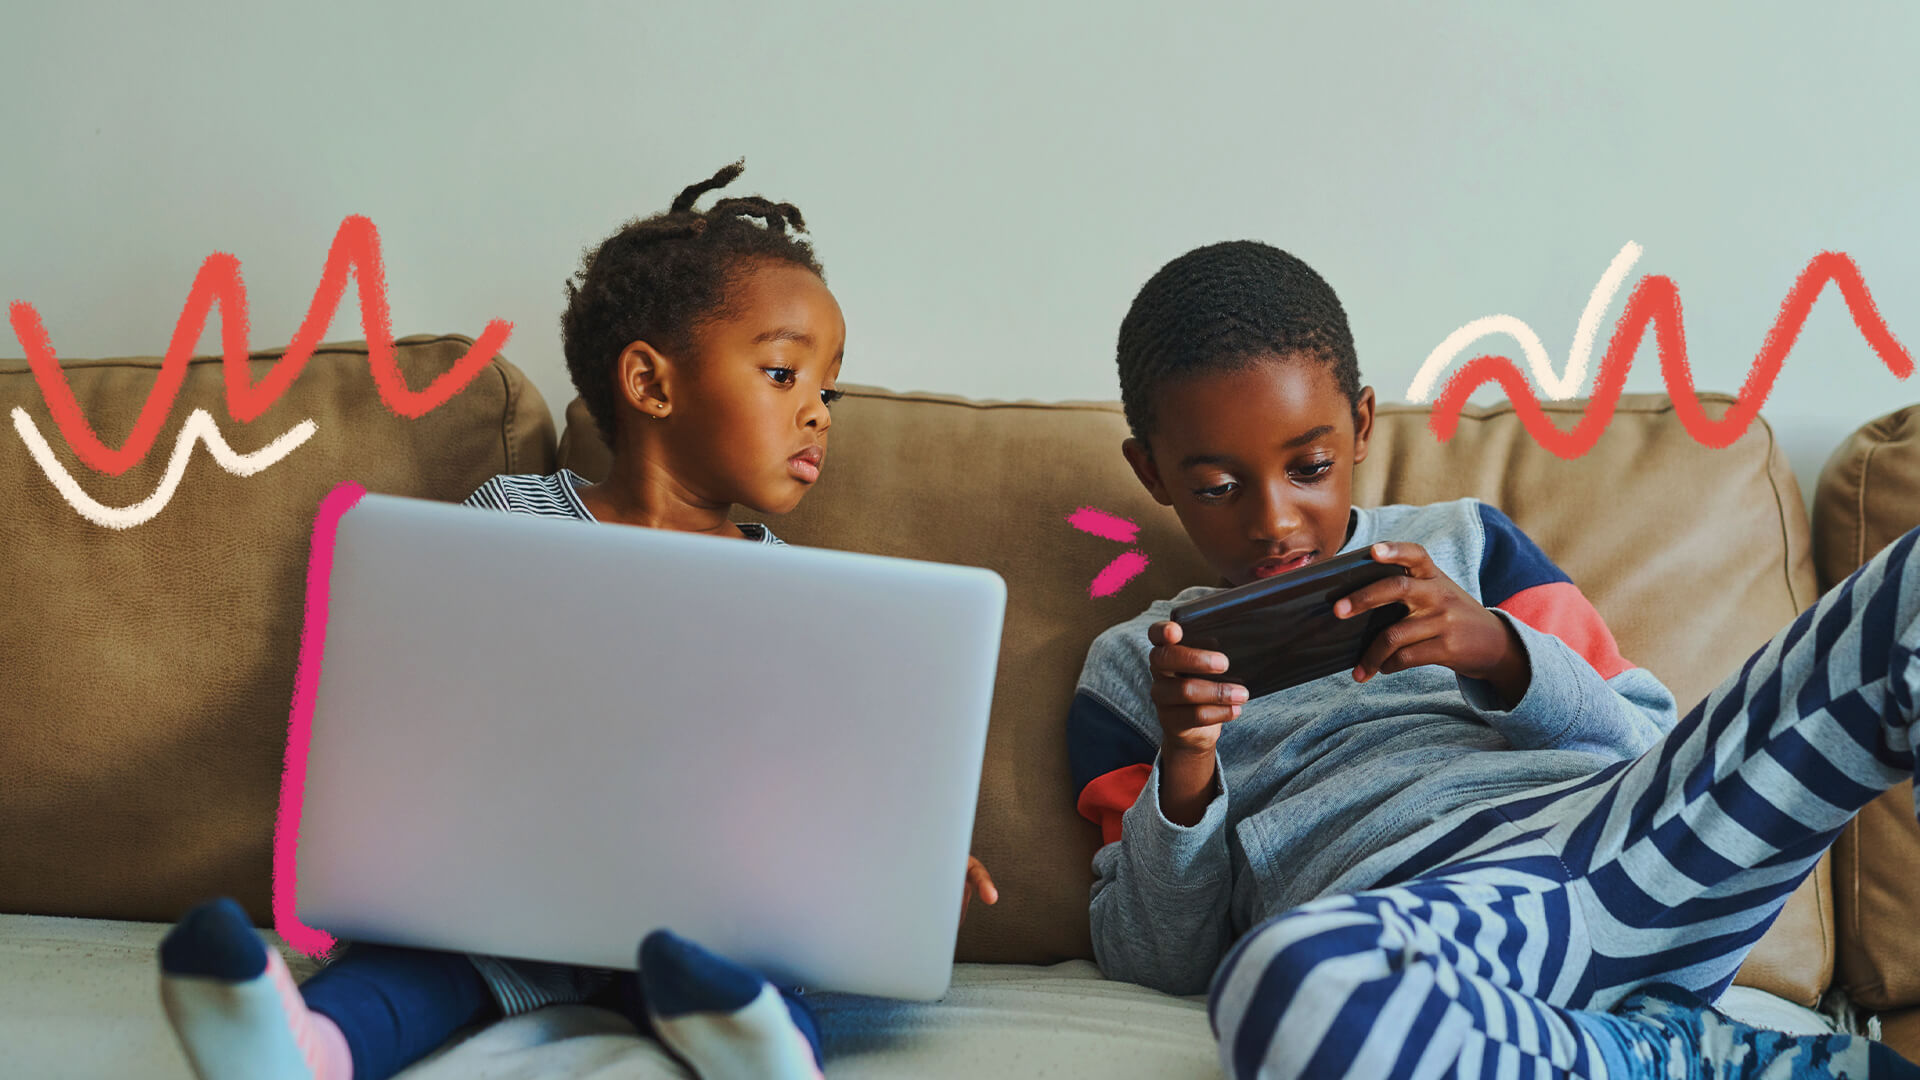 Duas crianças negras estão sentadas em um sofá bege. Elas brincam com um notebook e um celular. A imagem possui intervenções de rabiscos coloridos.